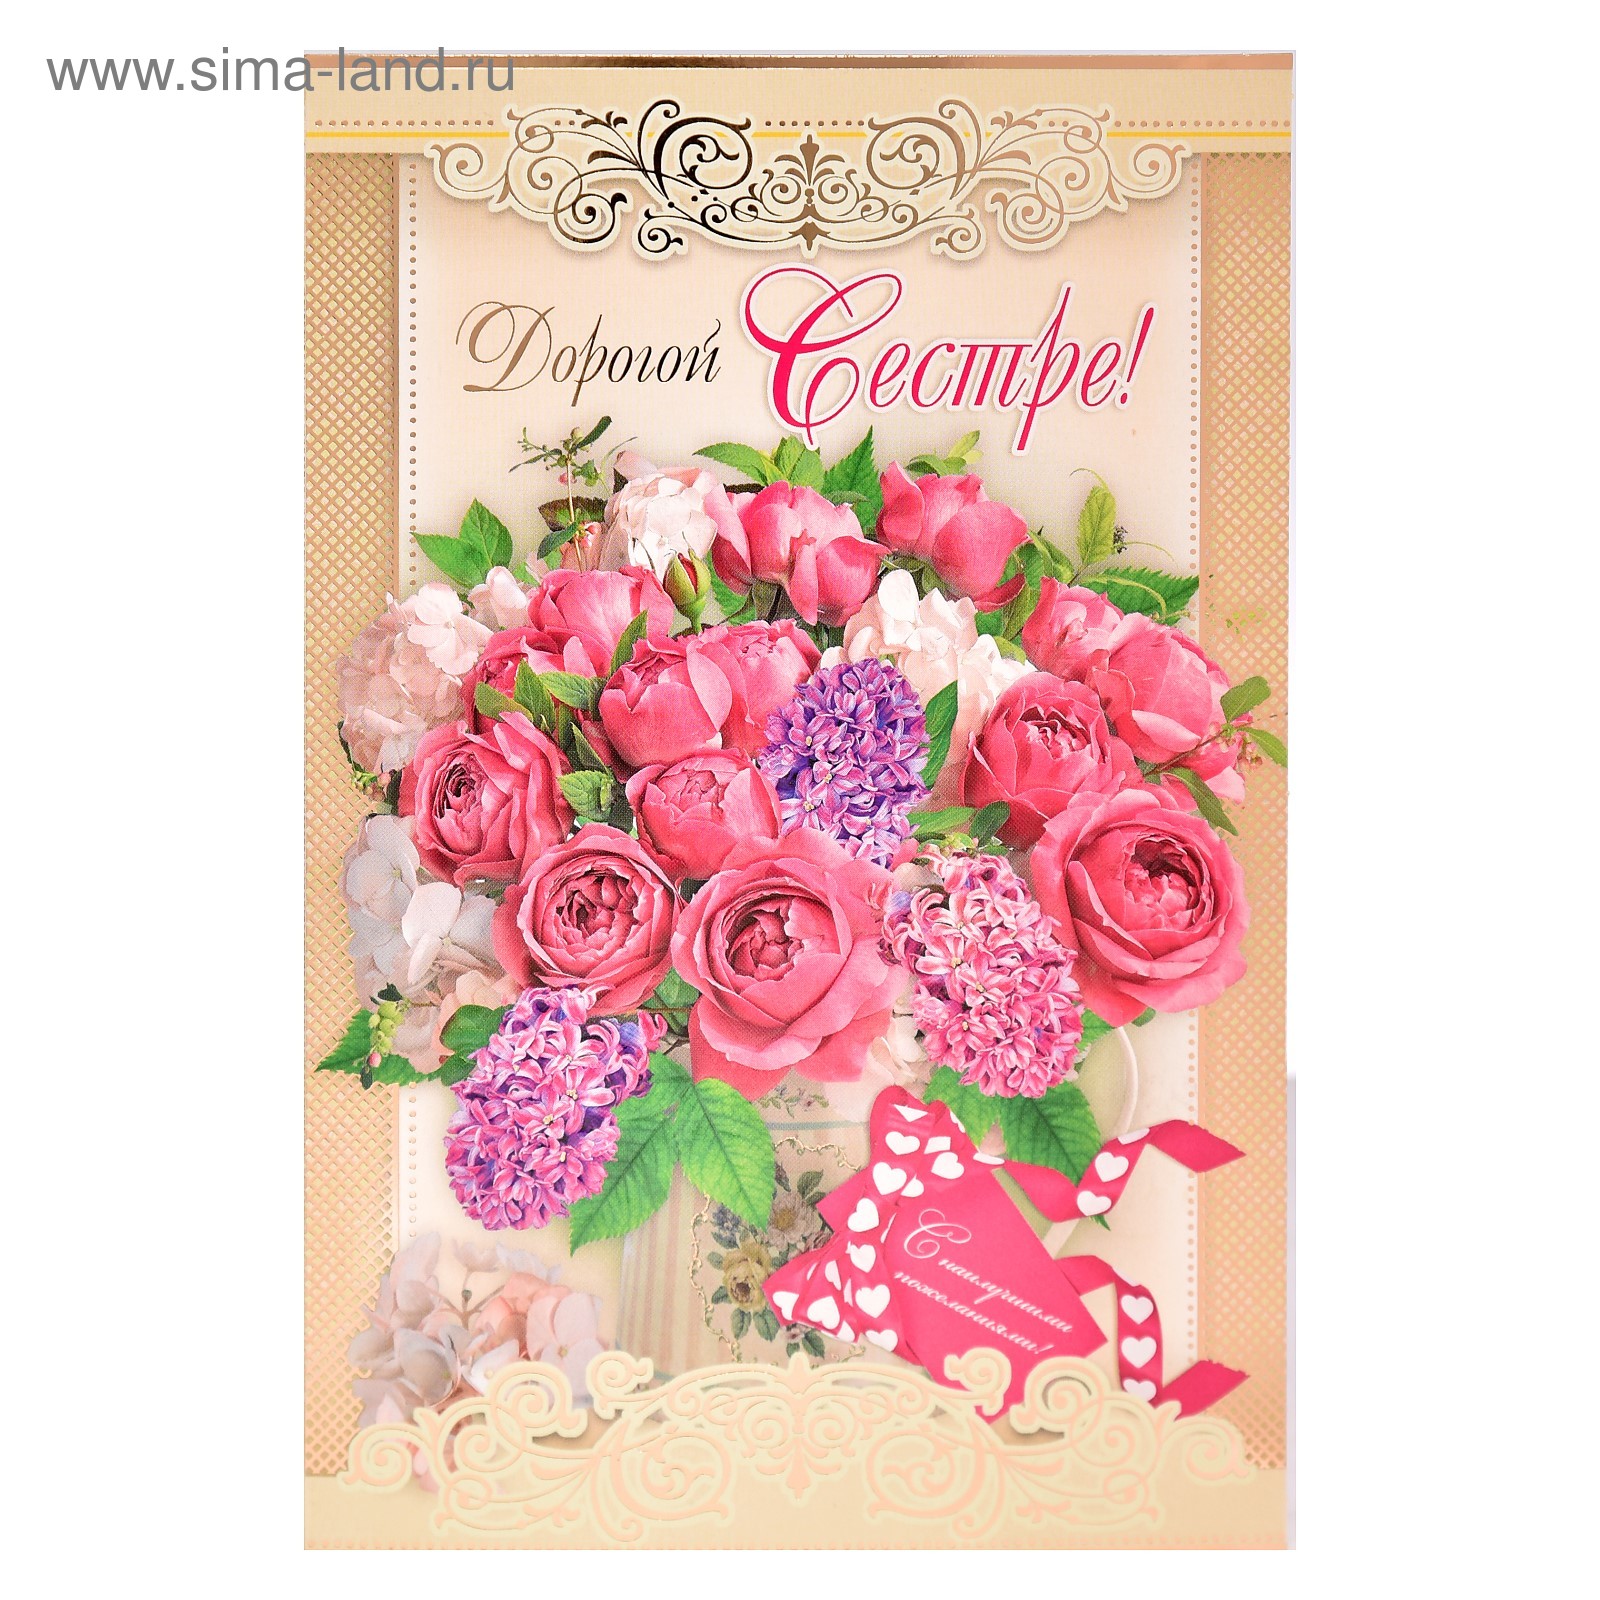 Цветы для сестры открытки